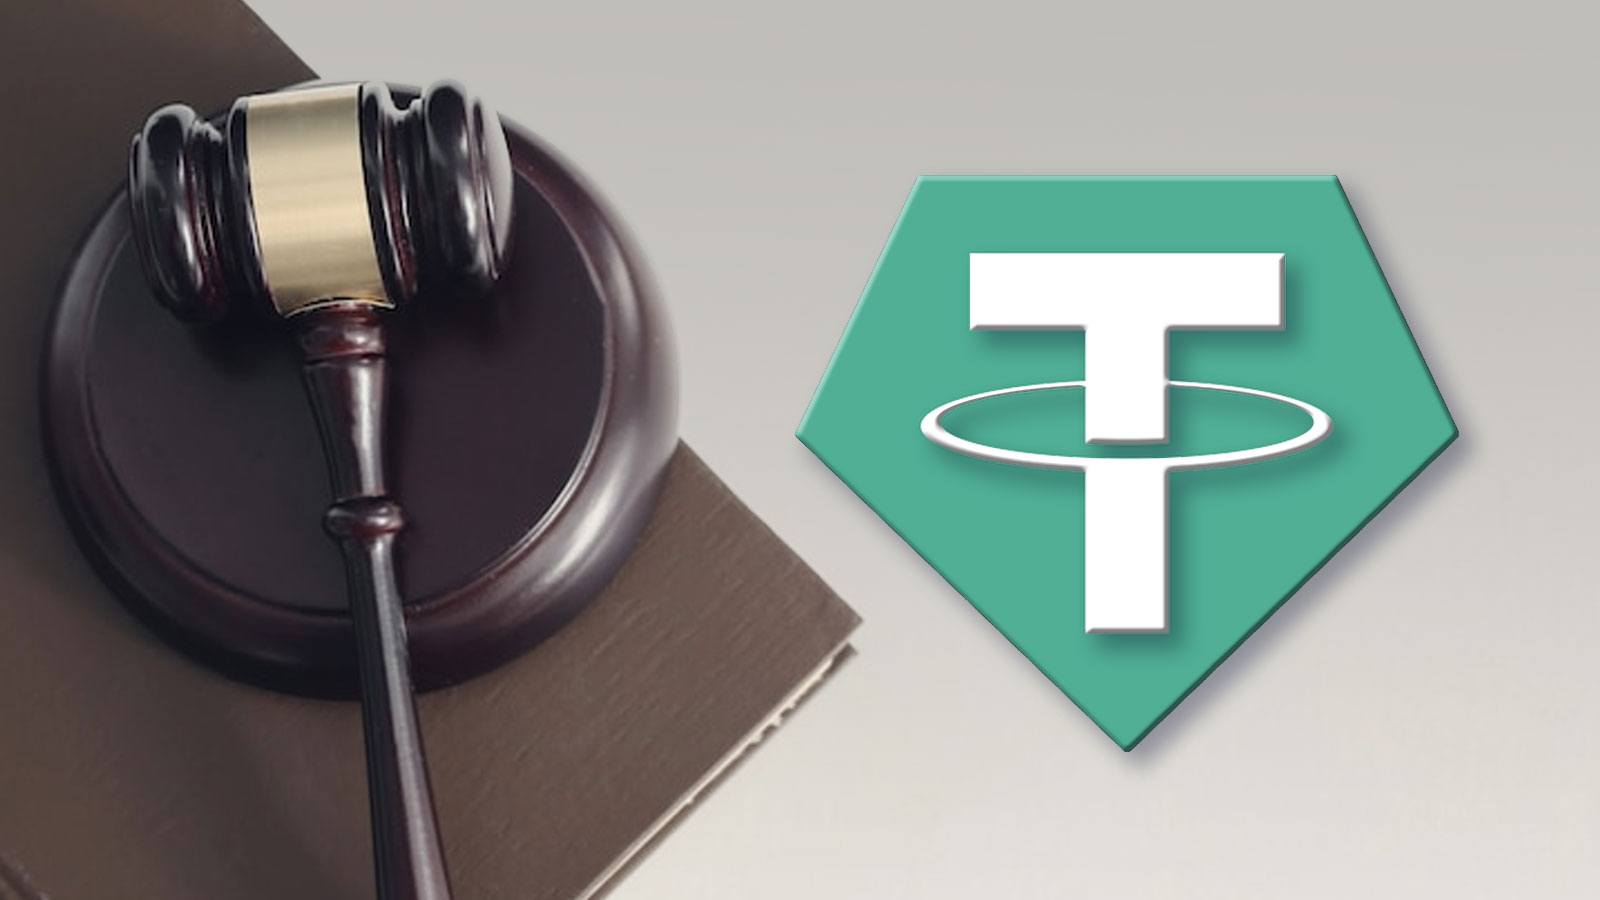 دادگاه نیویورک شرکت تتر را به ارائه سوابق مالی USDT ملزم کرد